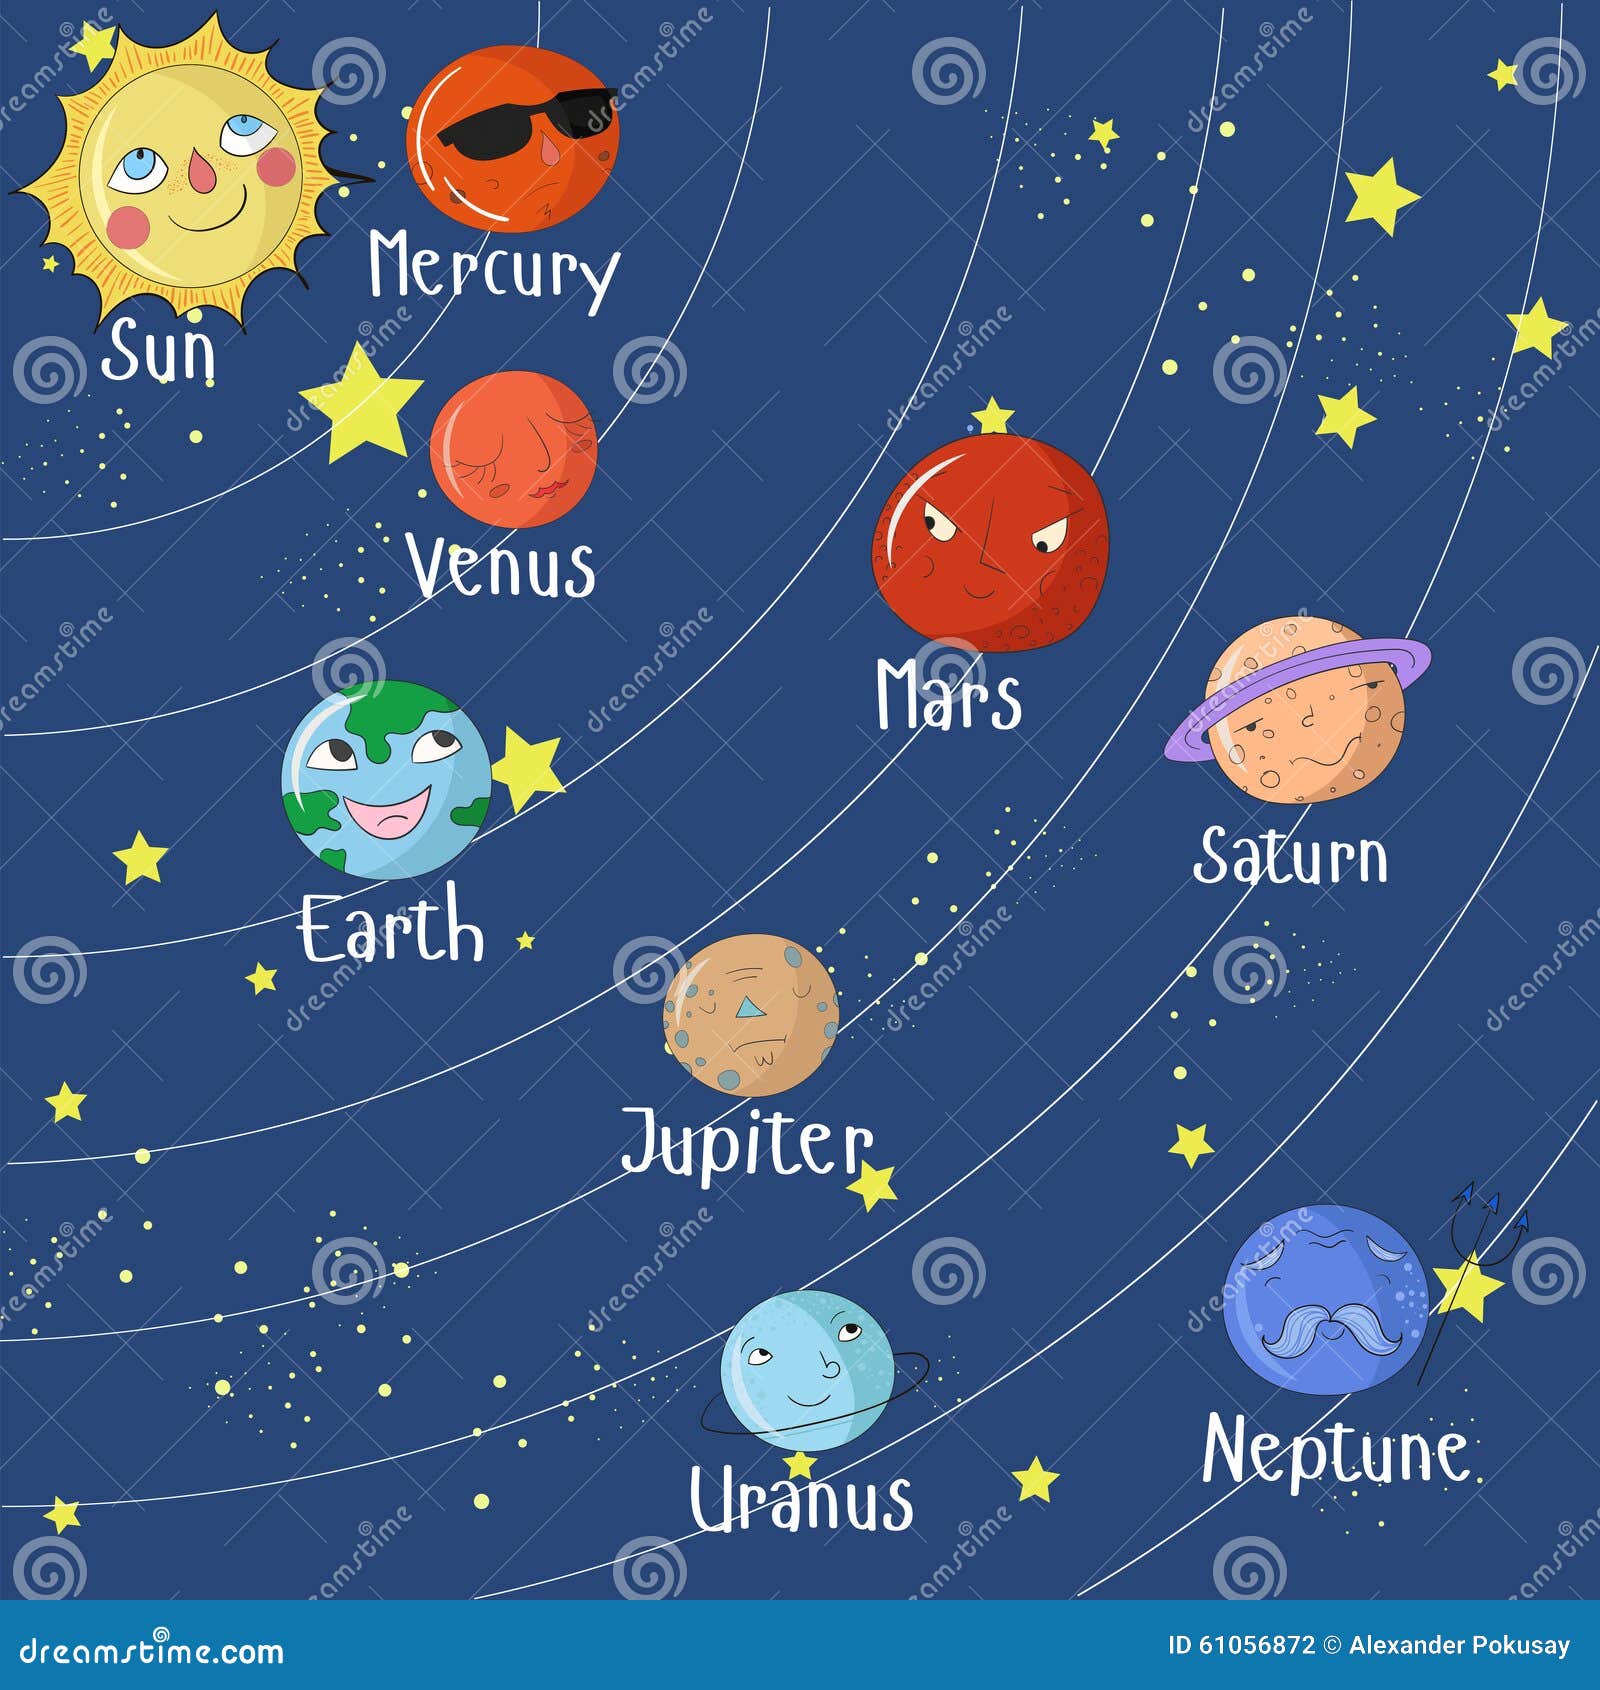 Названия планет на английском. Солнечная система для детей. Название планет для детей. Планеты солнечной системы для детей. Планеты на англ для детей.